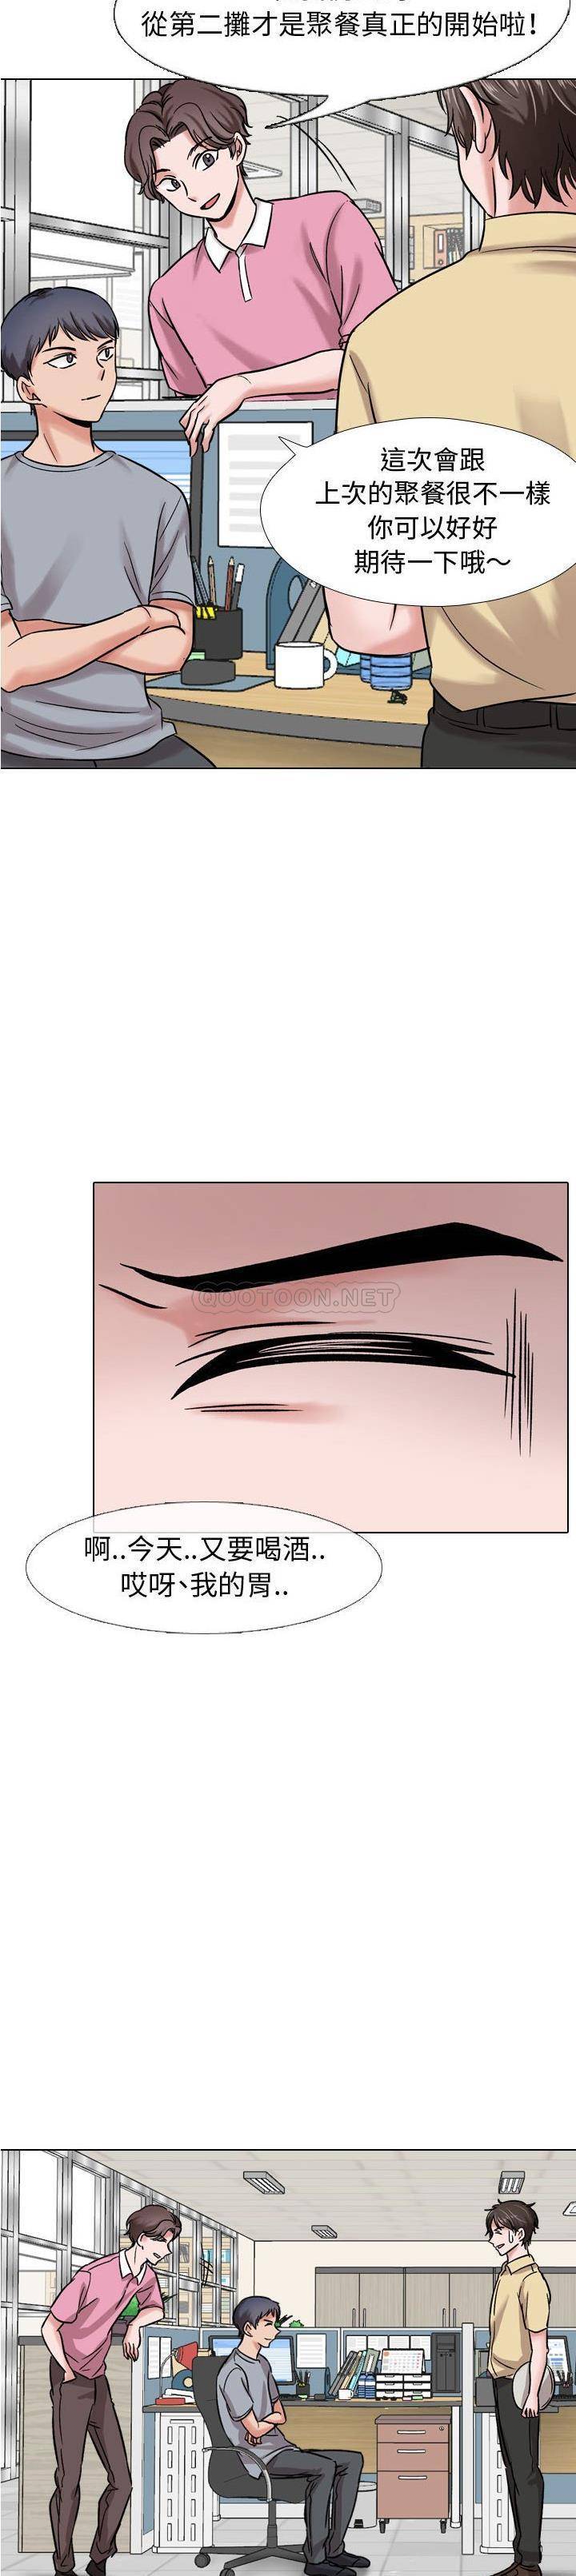 韩国污漫画 不單純友情 第5话 20